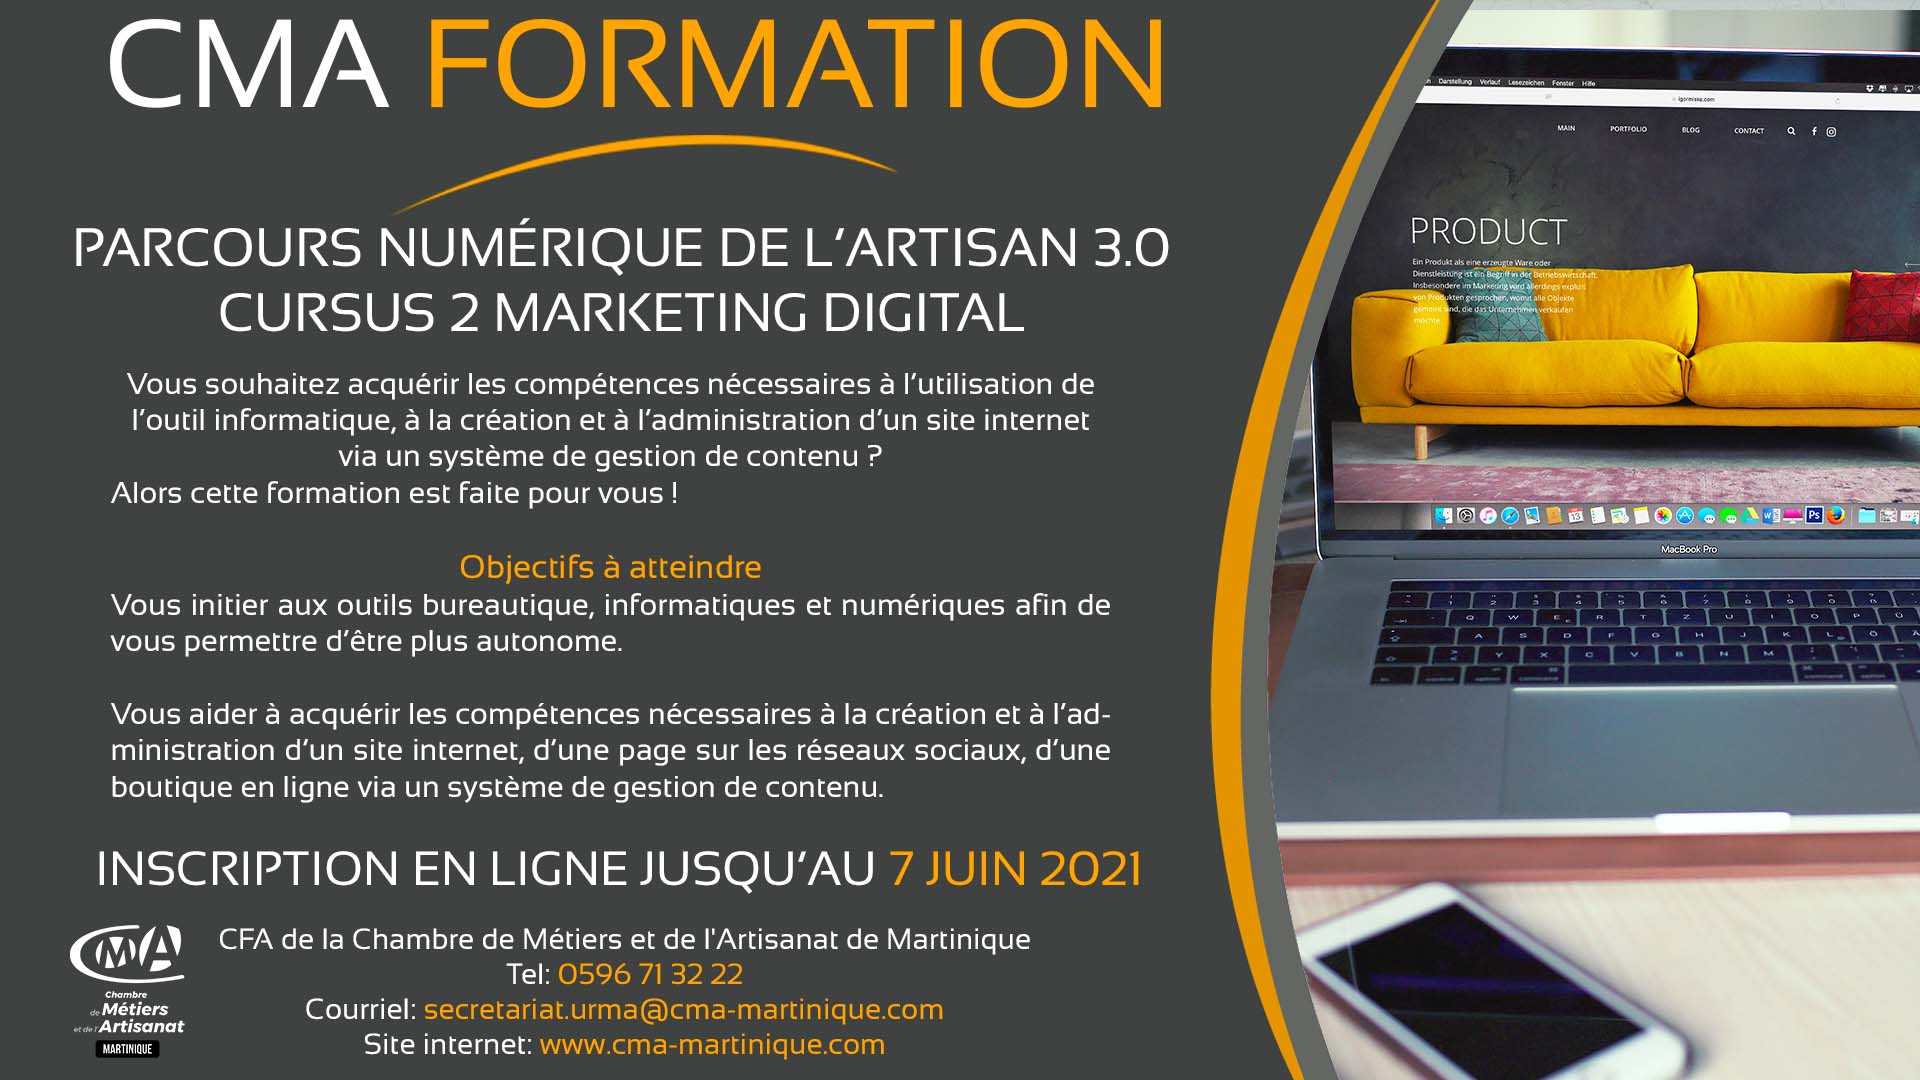 CMA Martinique Marketing digital